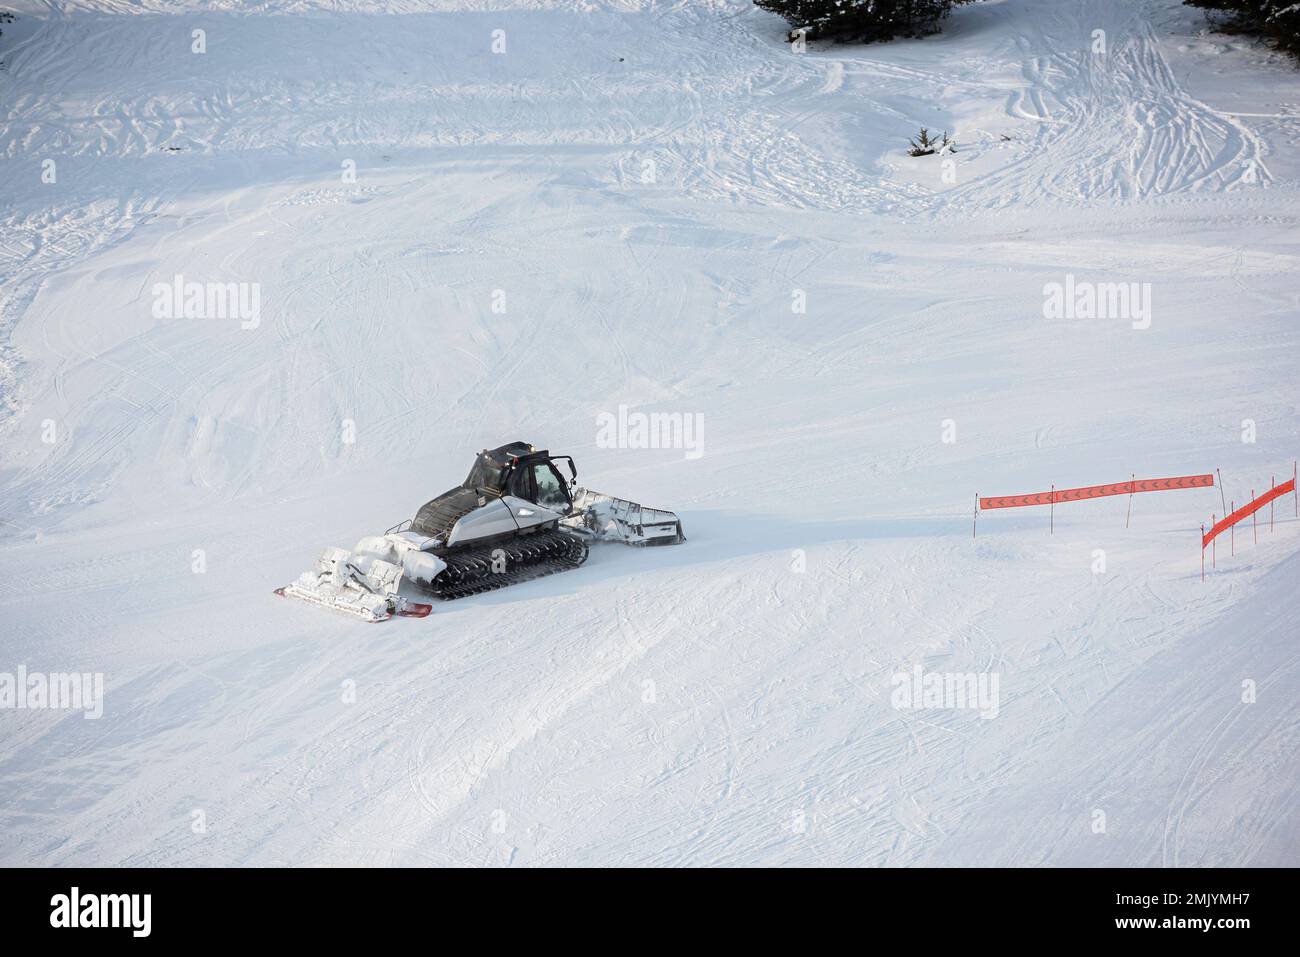 Snow groomer on a ski slope, Ski resort in the Alps, France Stock Photo